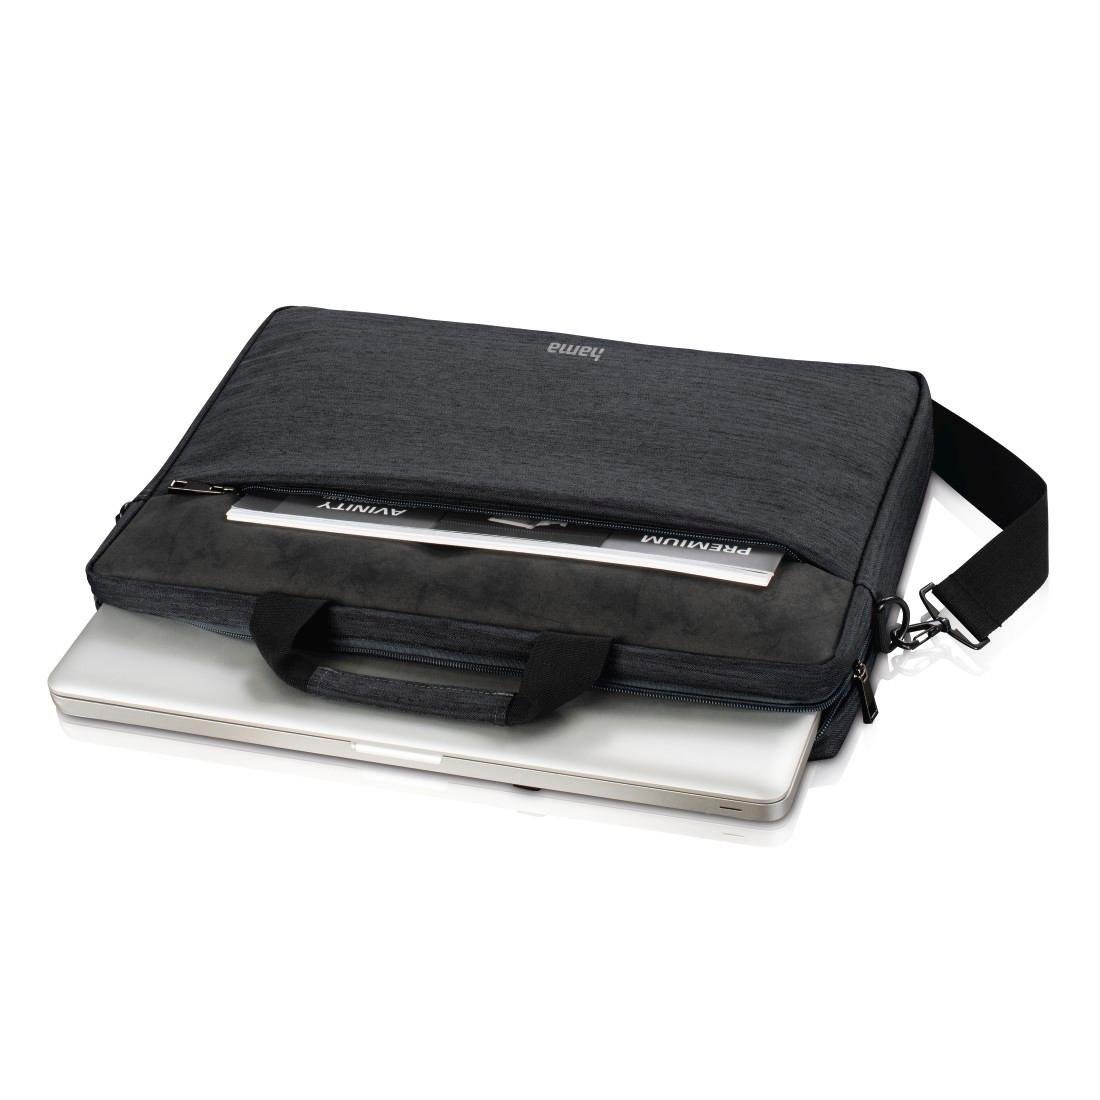 Displaygröße: Für Laptop-Tasche dunkelgrau (15,6) 40 "Tayrona", Notebook-Tasche, Hama Laptoptasche (15,6) cm cm 40 bis